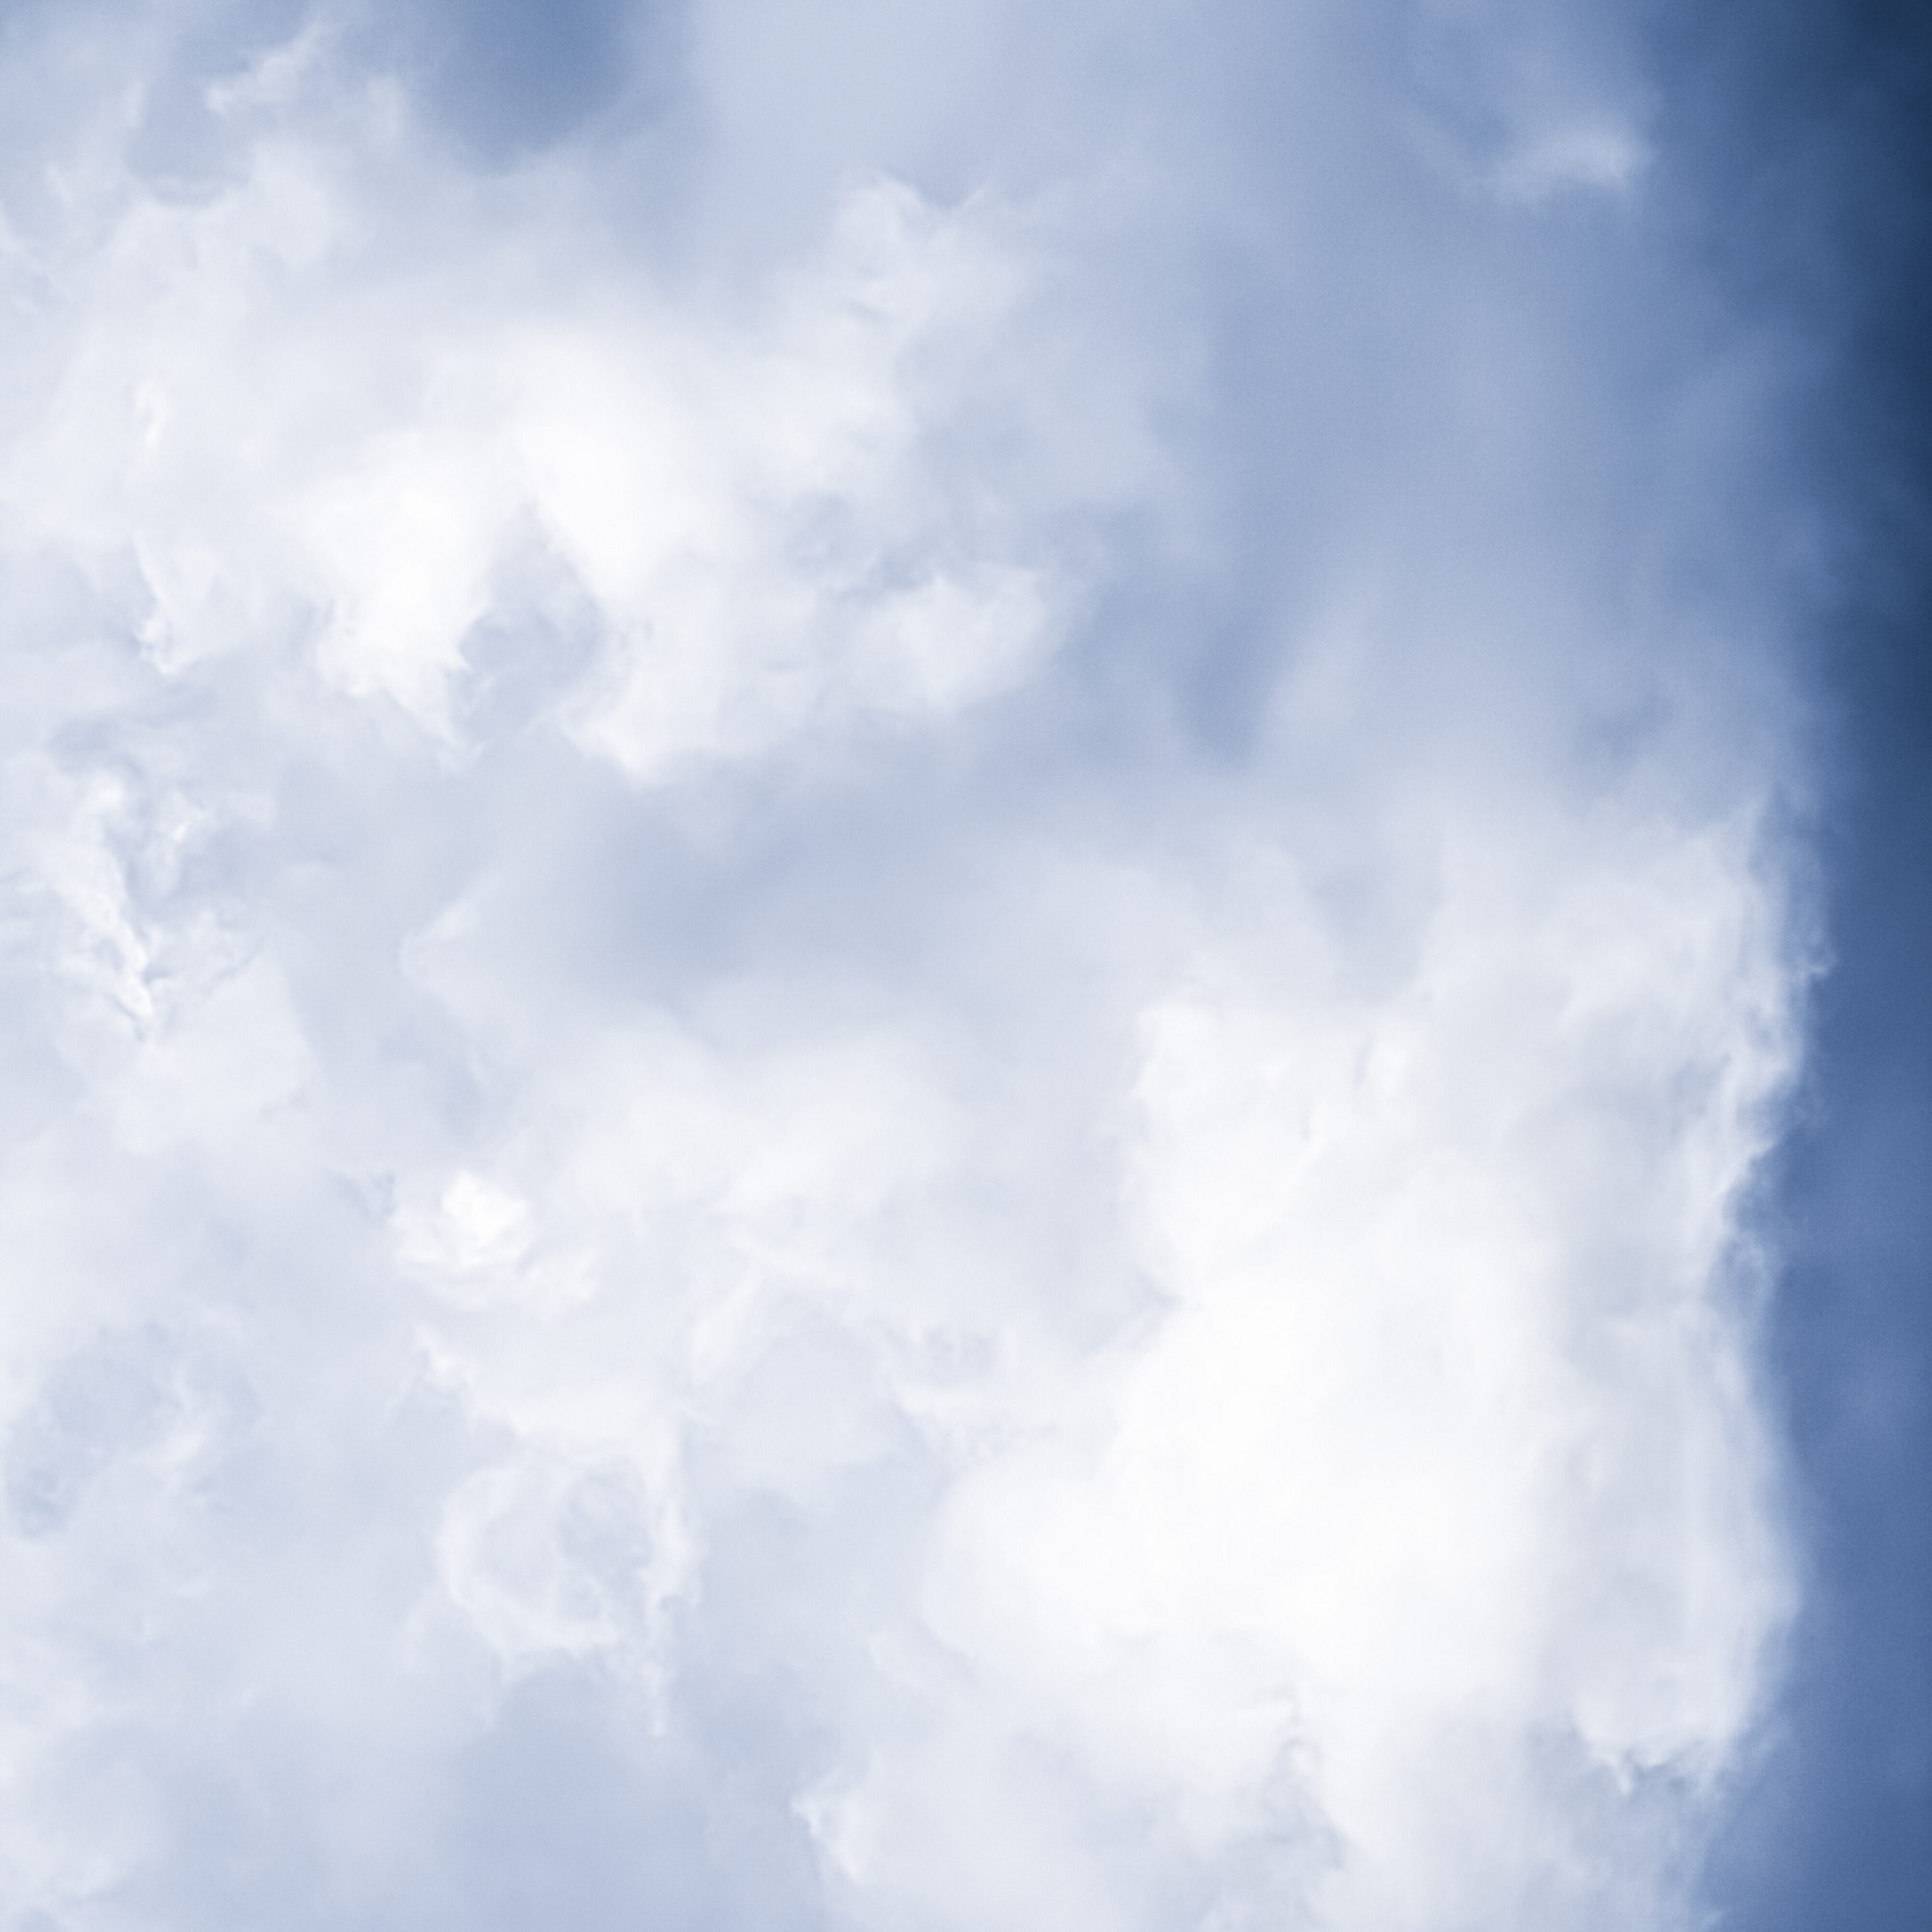 2934x2934 iOS iPad wallpaper 4k Minimalist Blue Sky Cloudy iPad Wallpaper 2934x2934 pixels resolution